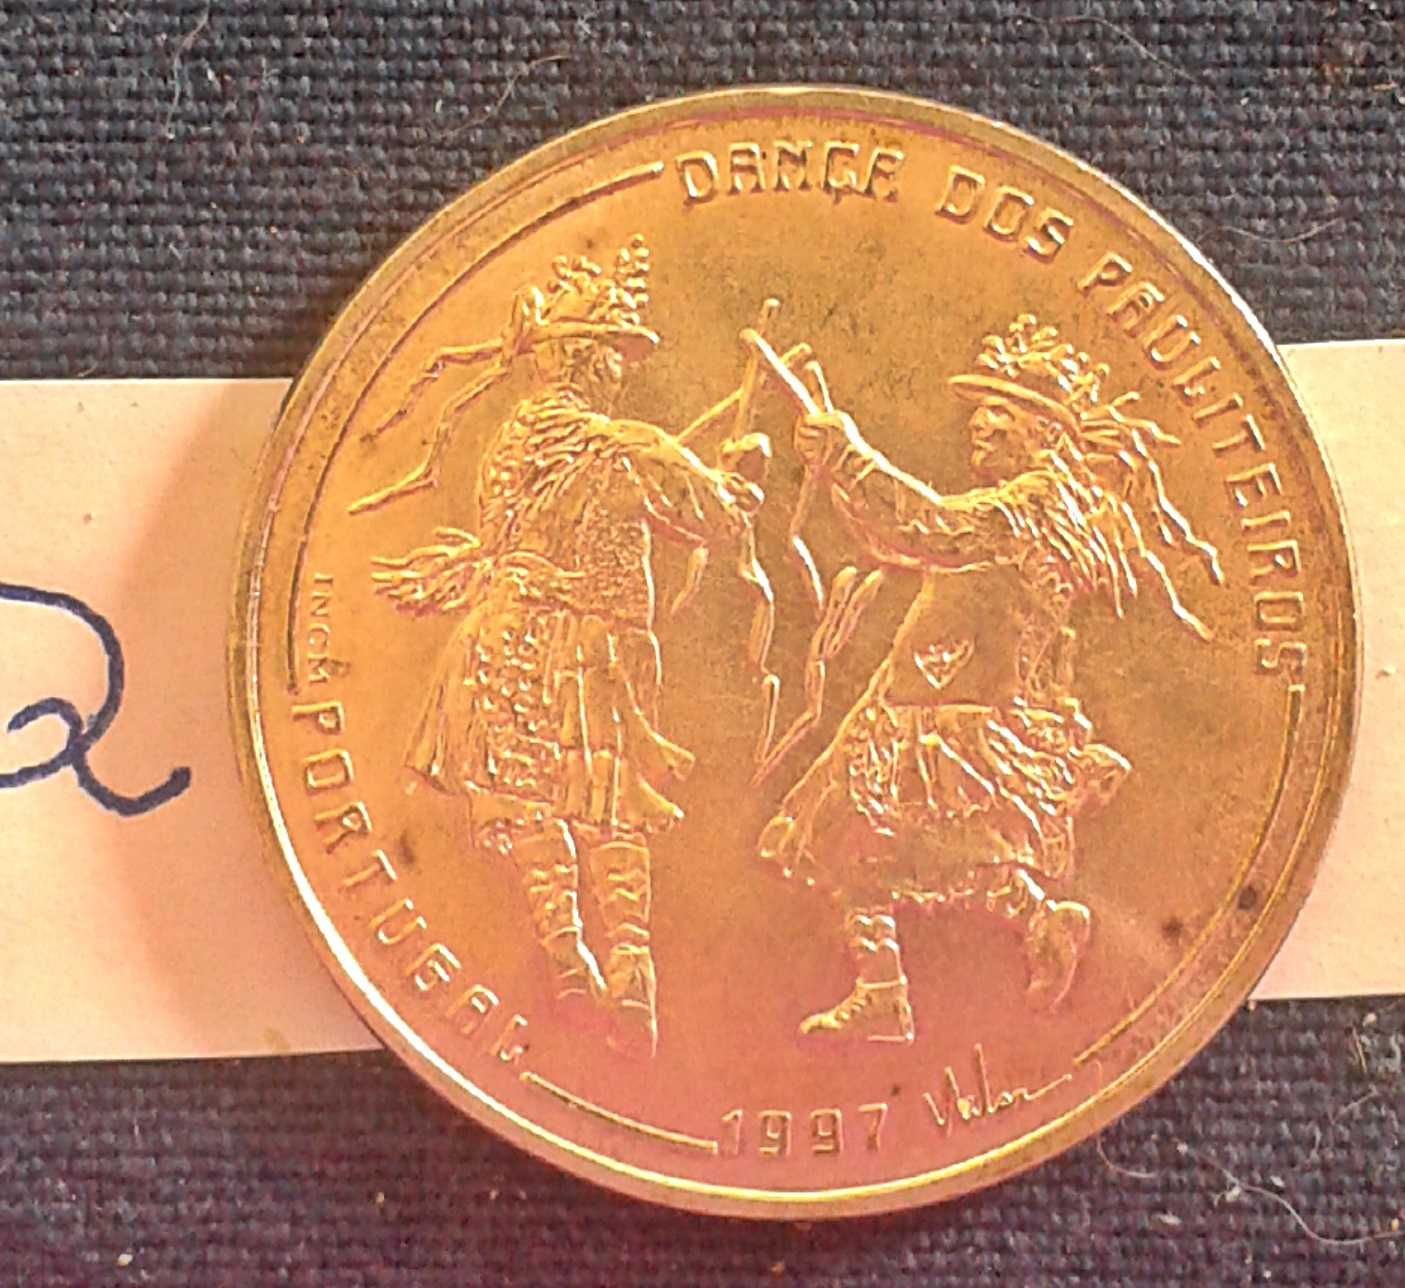 1000$ Moeda Prata DANÇA DOS PAULITEIROS.1997 Silver coin Portugal